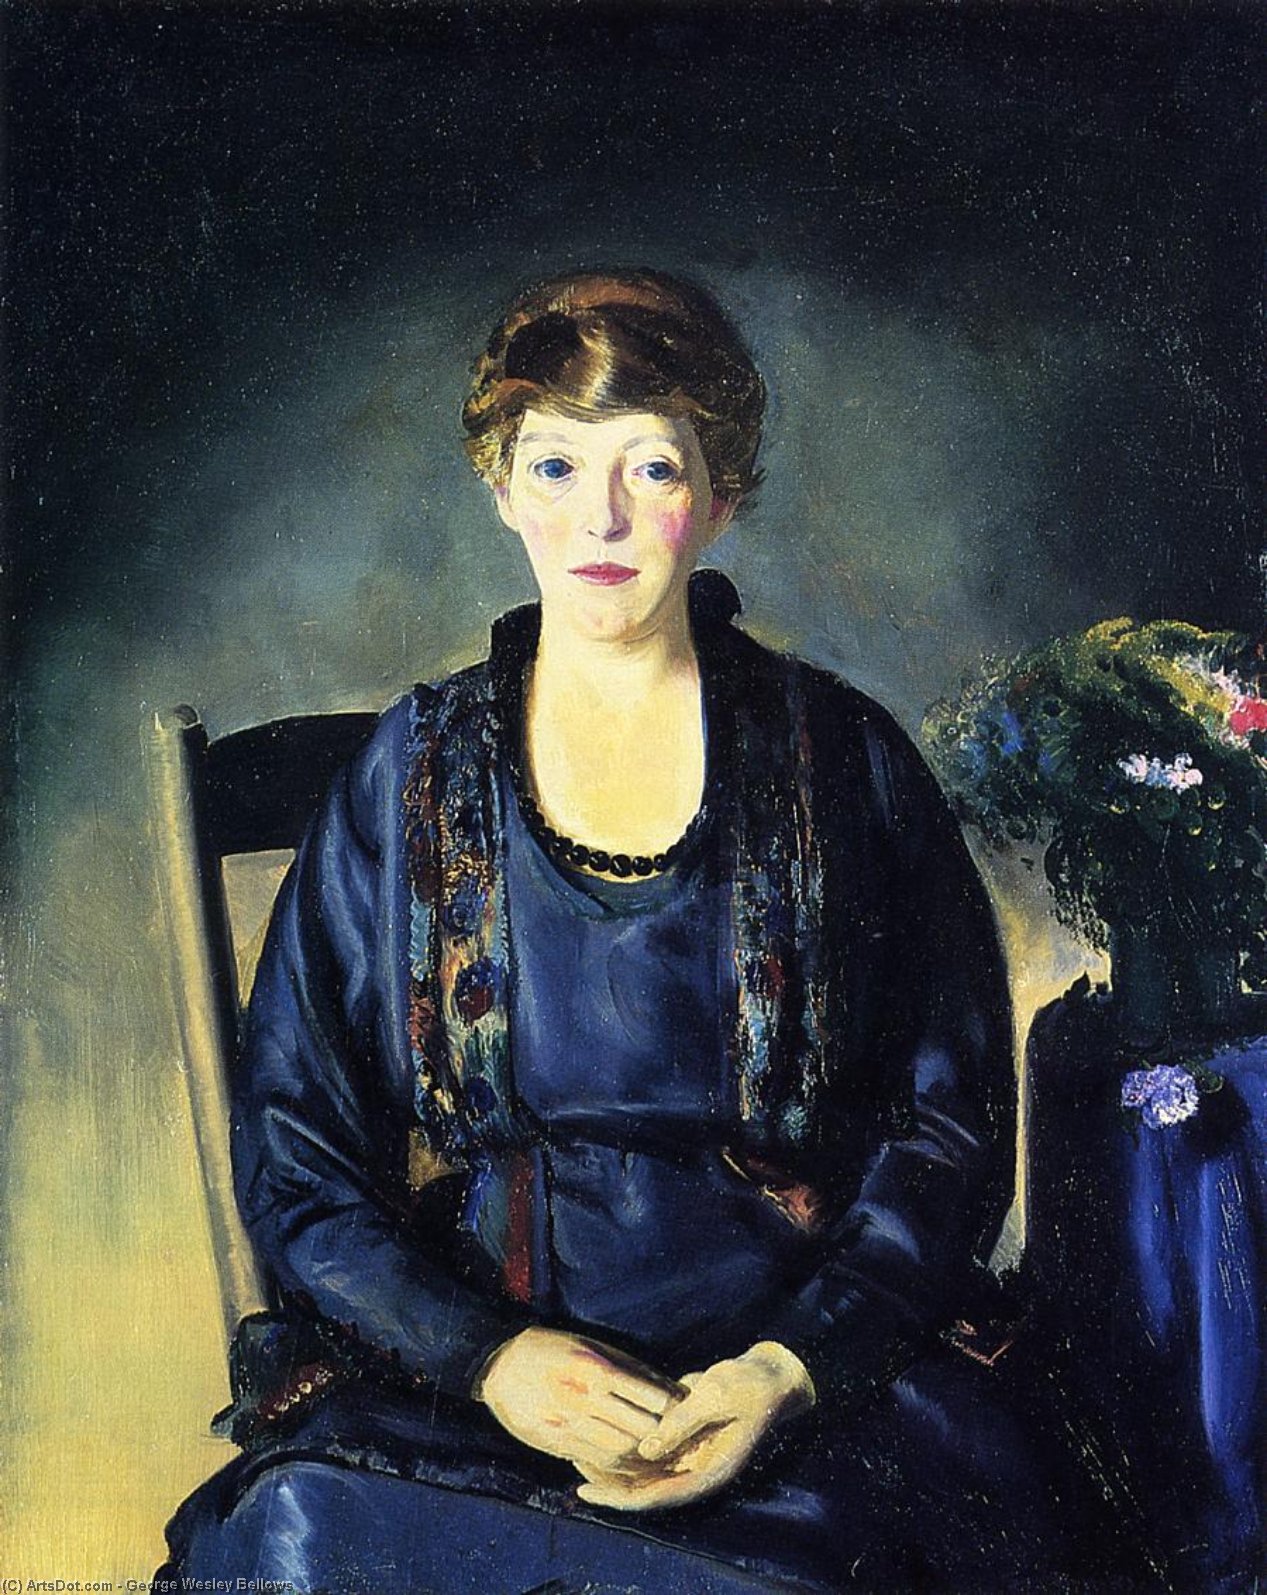 WikiOO.org - אנציקלופדיה לאמנויות יפות - ציור, יצירות אמנות George Wesley Bellows - Portrait of Laura